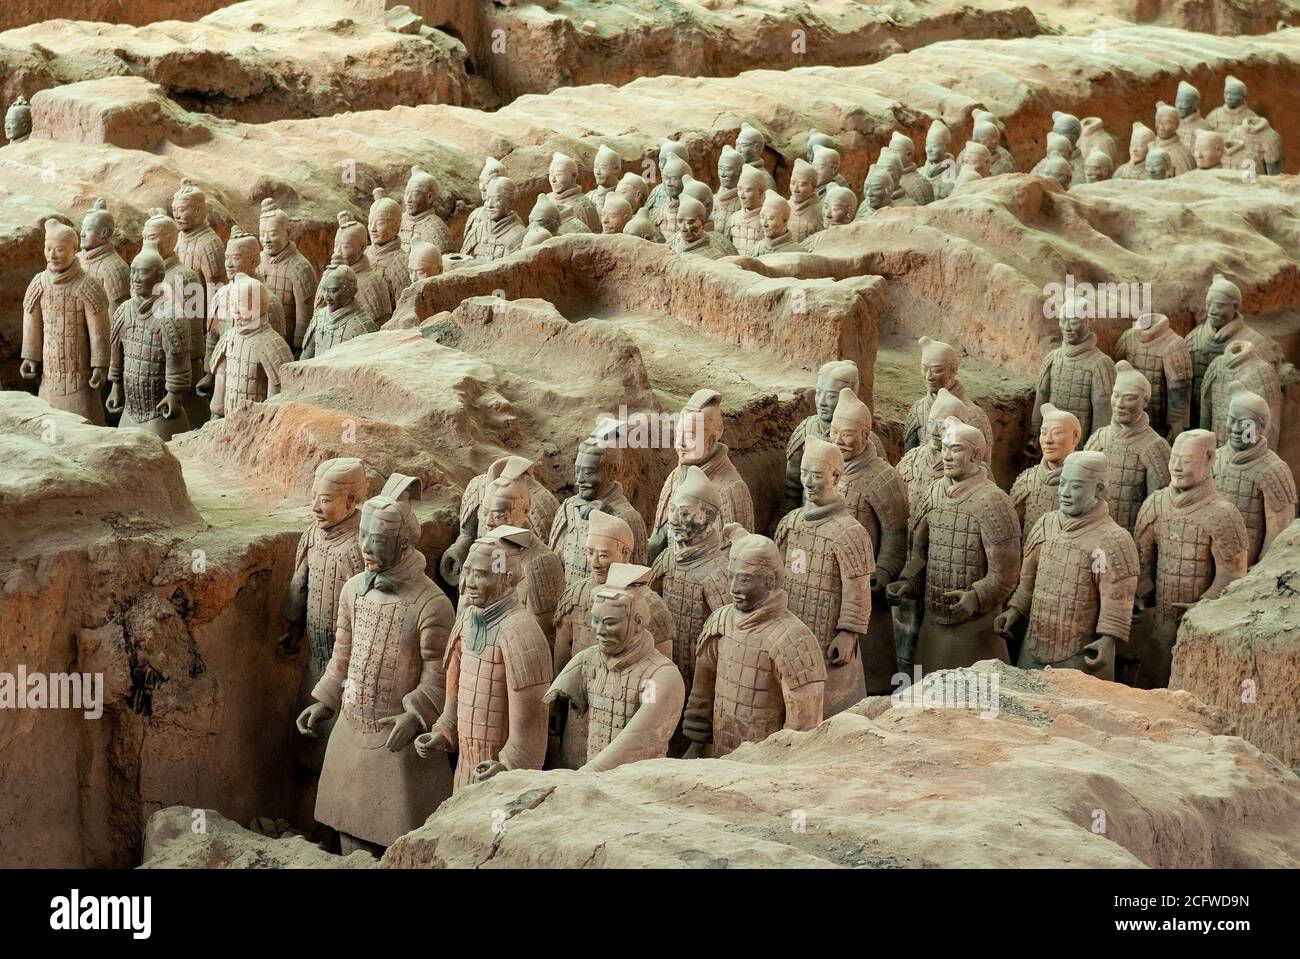 Soldati dell'esercito di terracotta nella tomba del mausoleo di Qin Shi Huang, primo imperatore della Cina, Xian, provincia di Shaanxi, Cina. Foto Stock